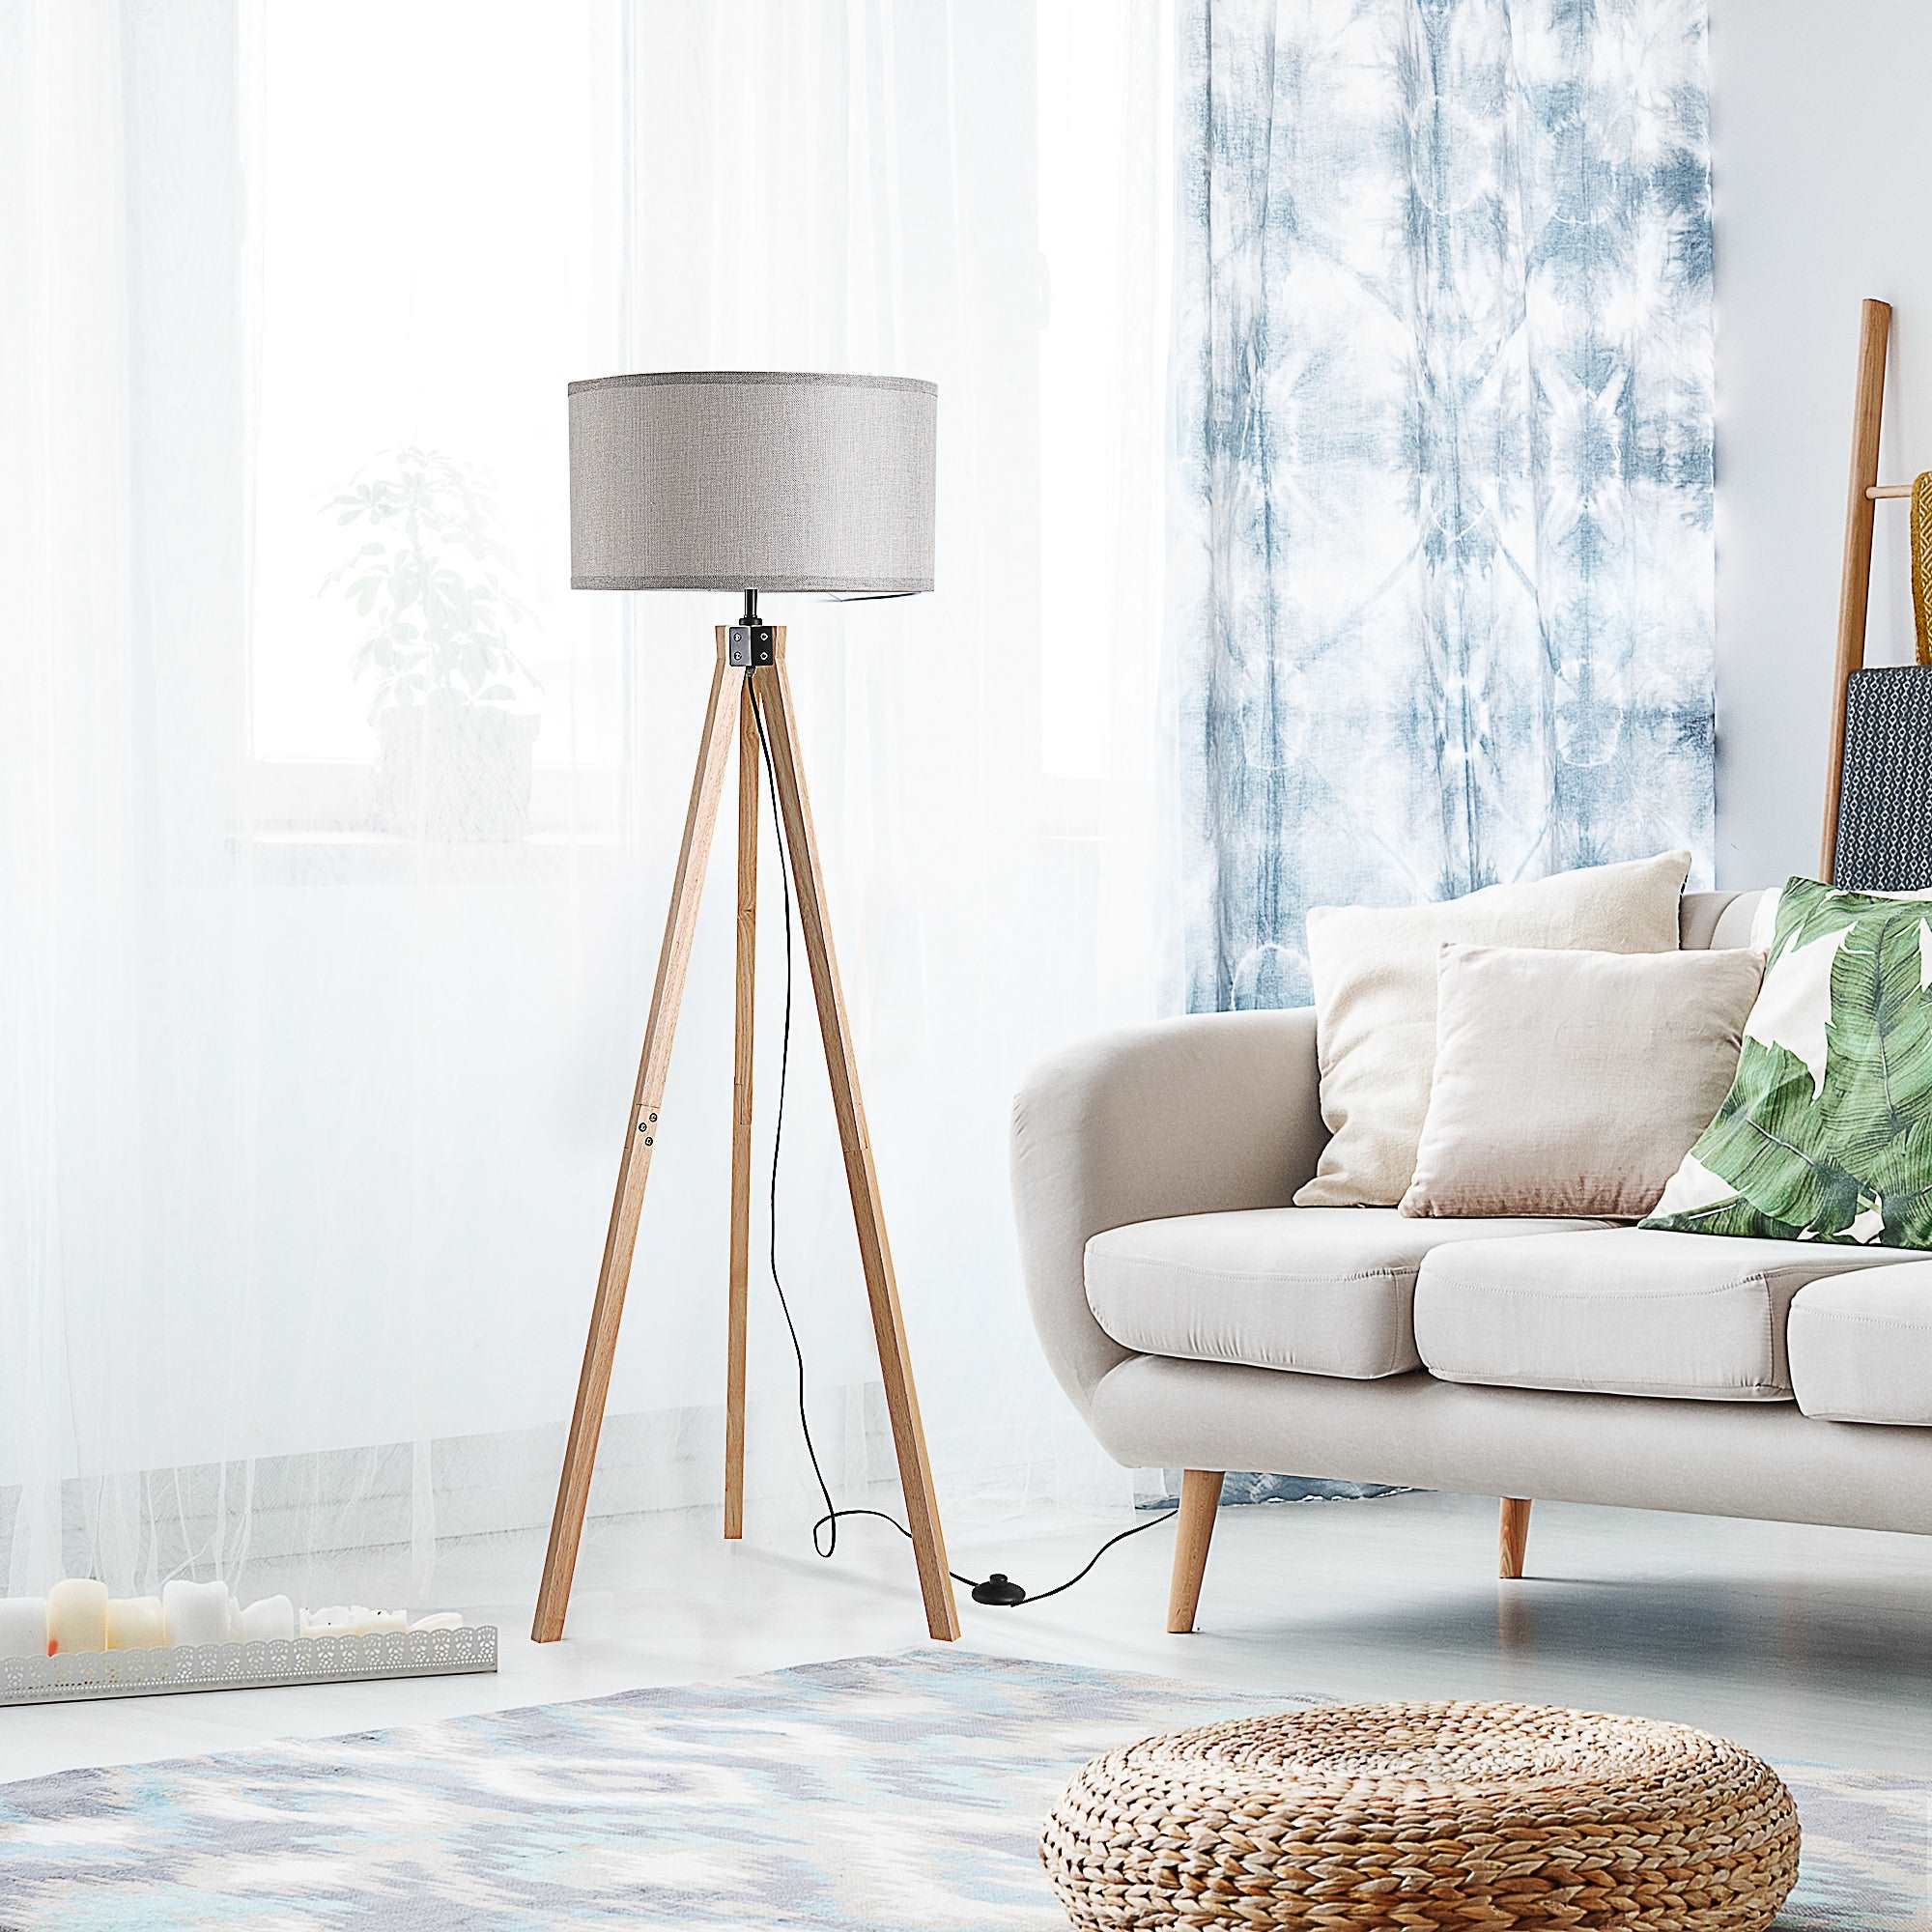 5FT Elegant Wood Tripod Floor Lamp Free Standing E27 Bulb Lamp Versatile Use for Home Office - Grey  AOSOM   